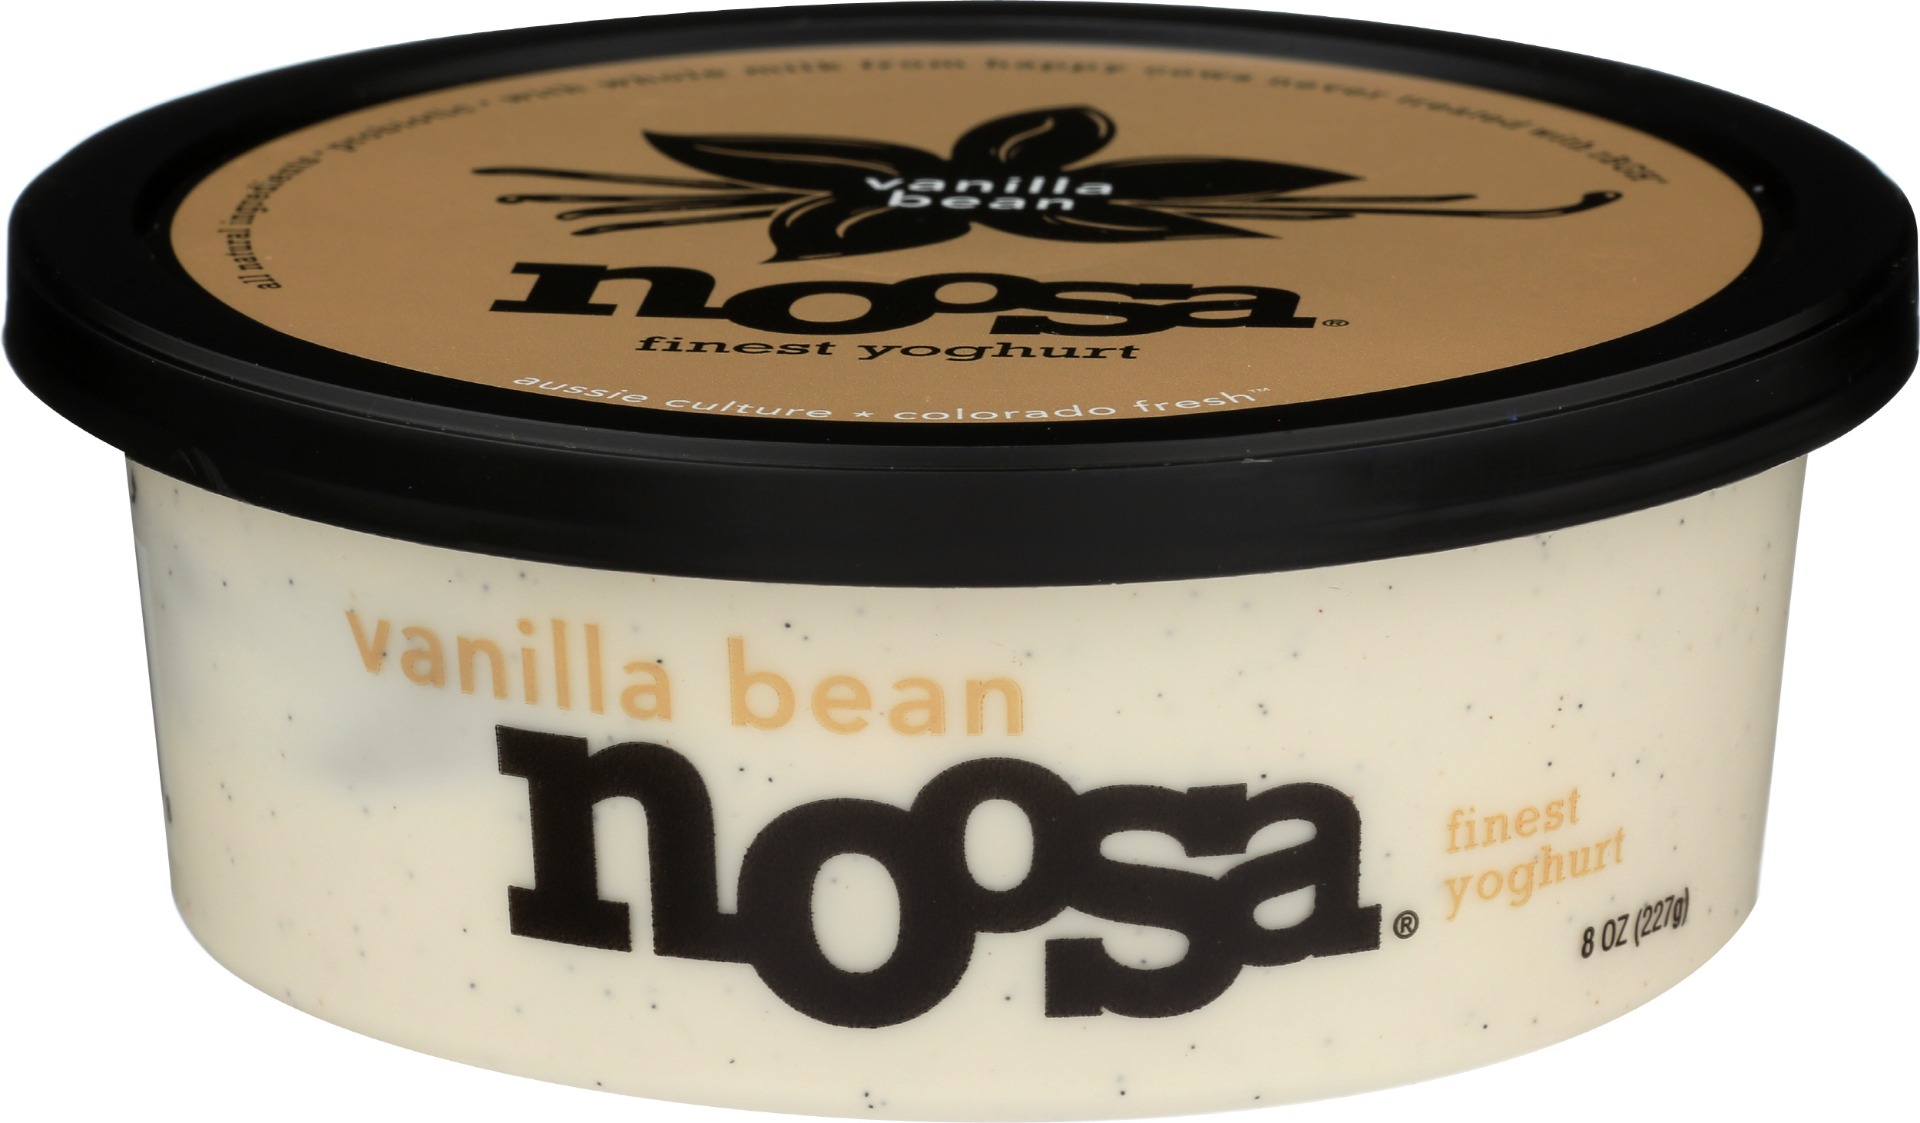 Vanilla Bean Finest Yoghurt, Vanilla Bean - 815909020338